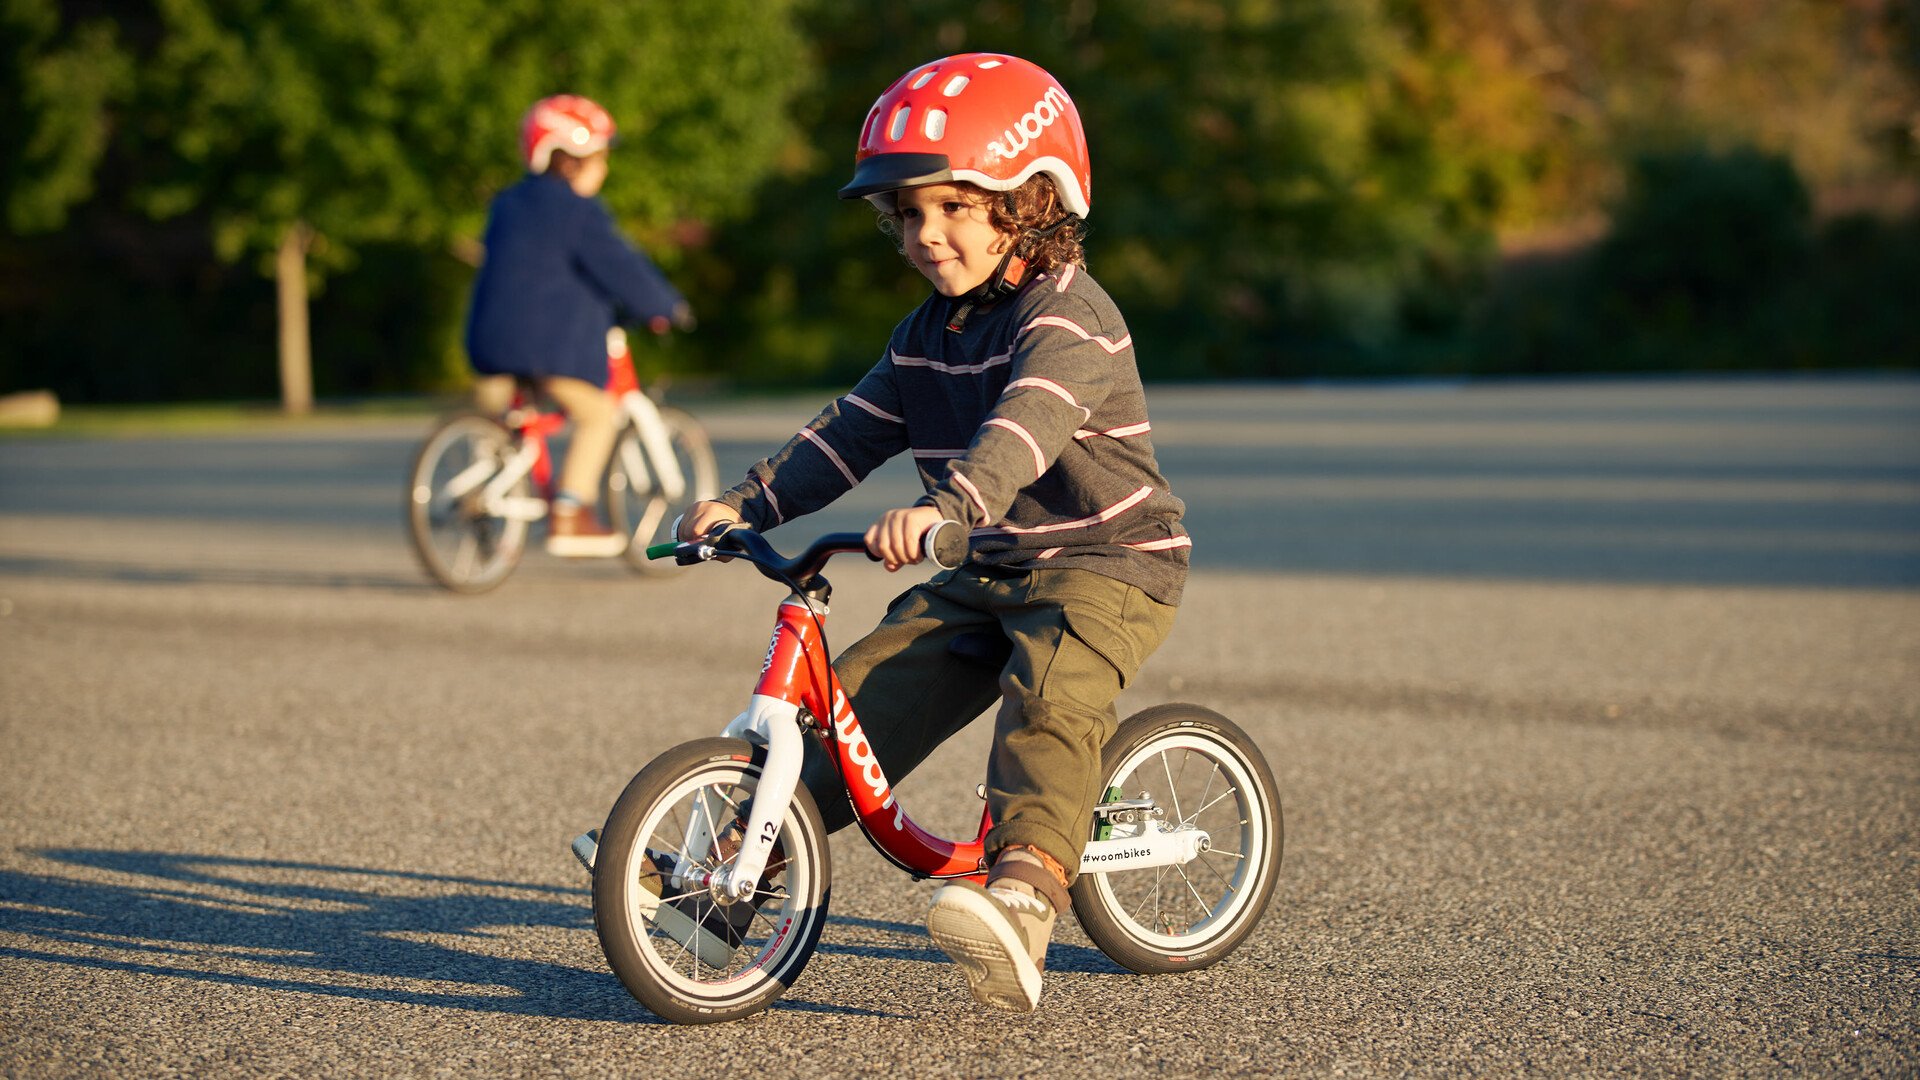 Un enfant avec un casque rouge roule sur l’asphalte avec une draisienne rouge du fabricant de vélo pour enfants woom.